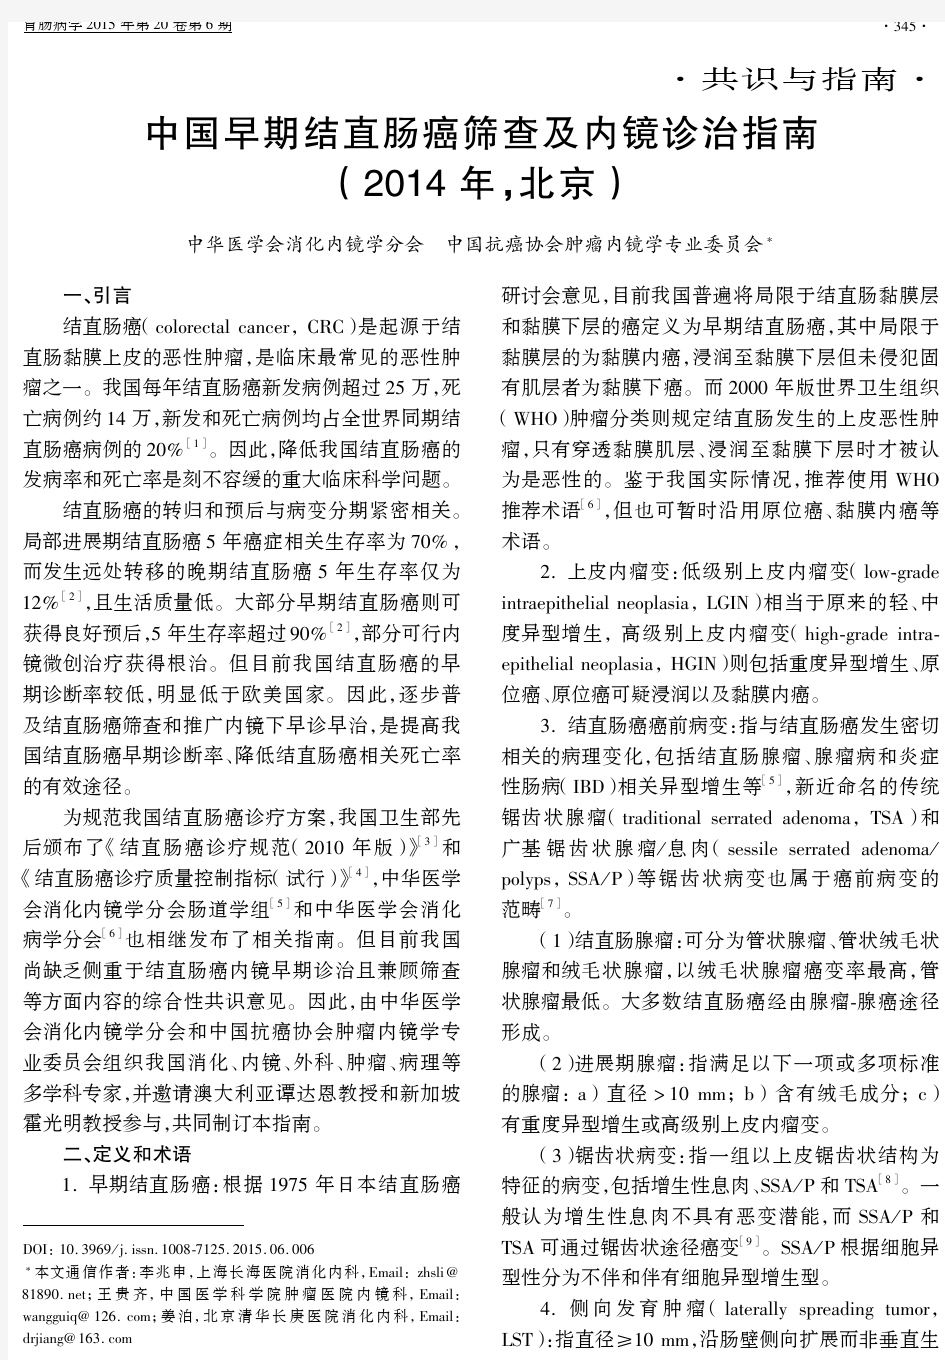 中国早期结直肠癌筛查及内镜诊治指南(2014年,北京)